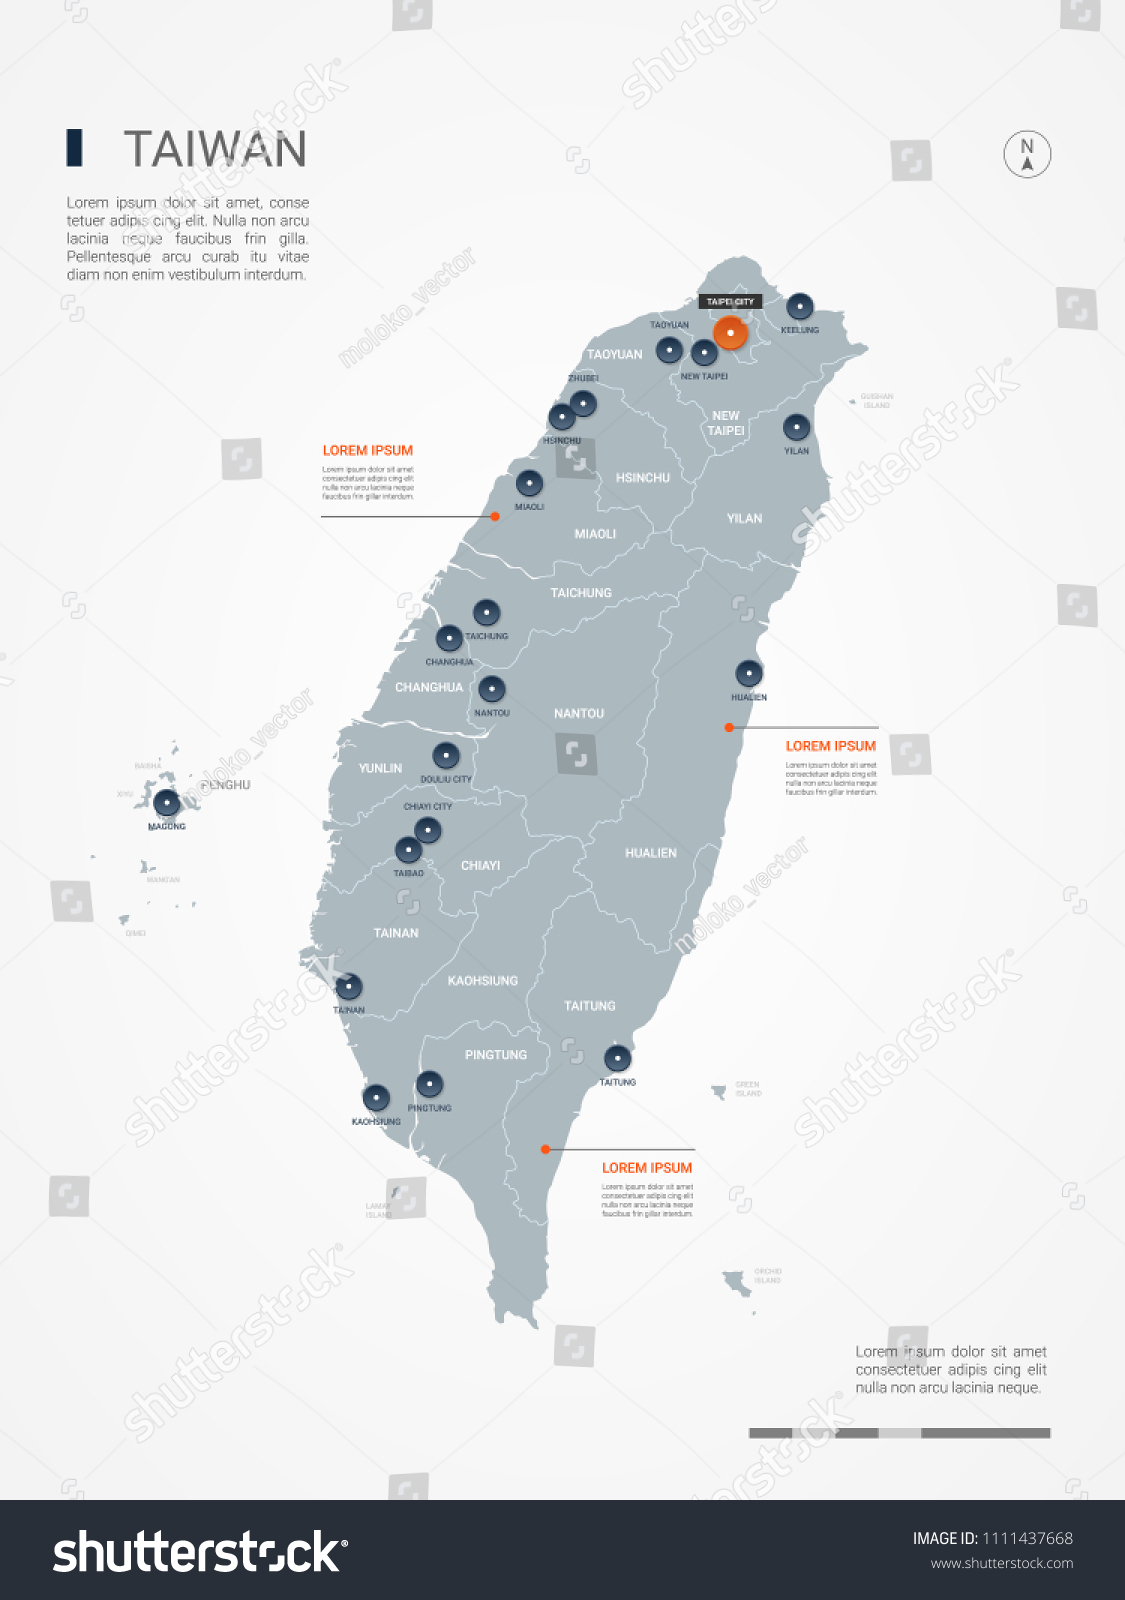 台湾のベクター画像地図 県庁 市 首都台北を含む詳細な国の地図 政治地図 世界地図 インフォグラフィックエレメント のベクター画像素材 ロイヤリティフリー Shutterstock